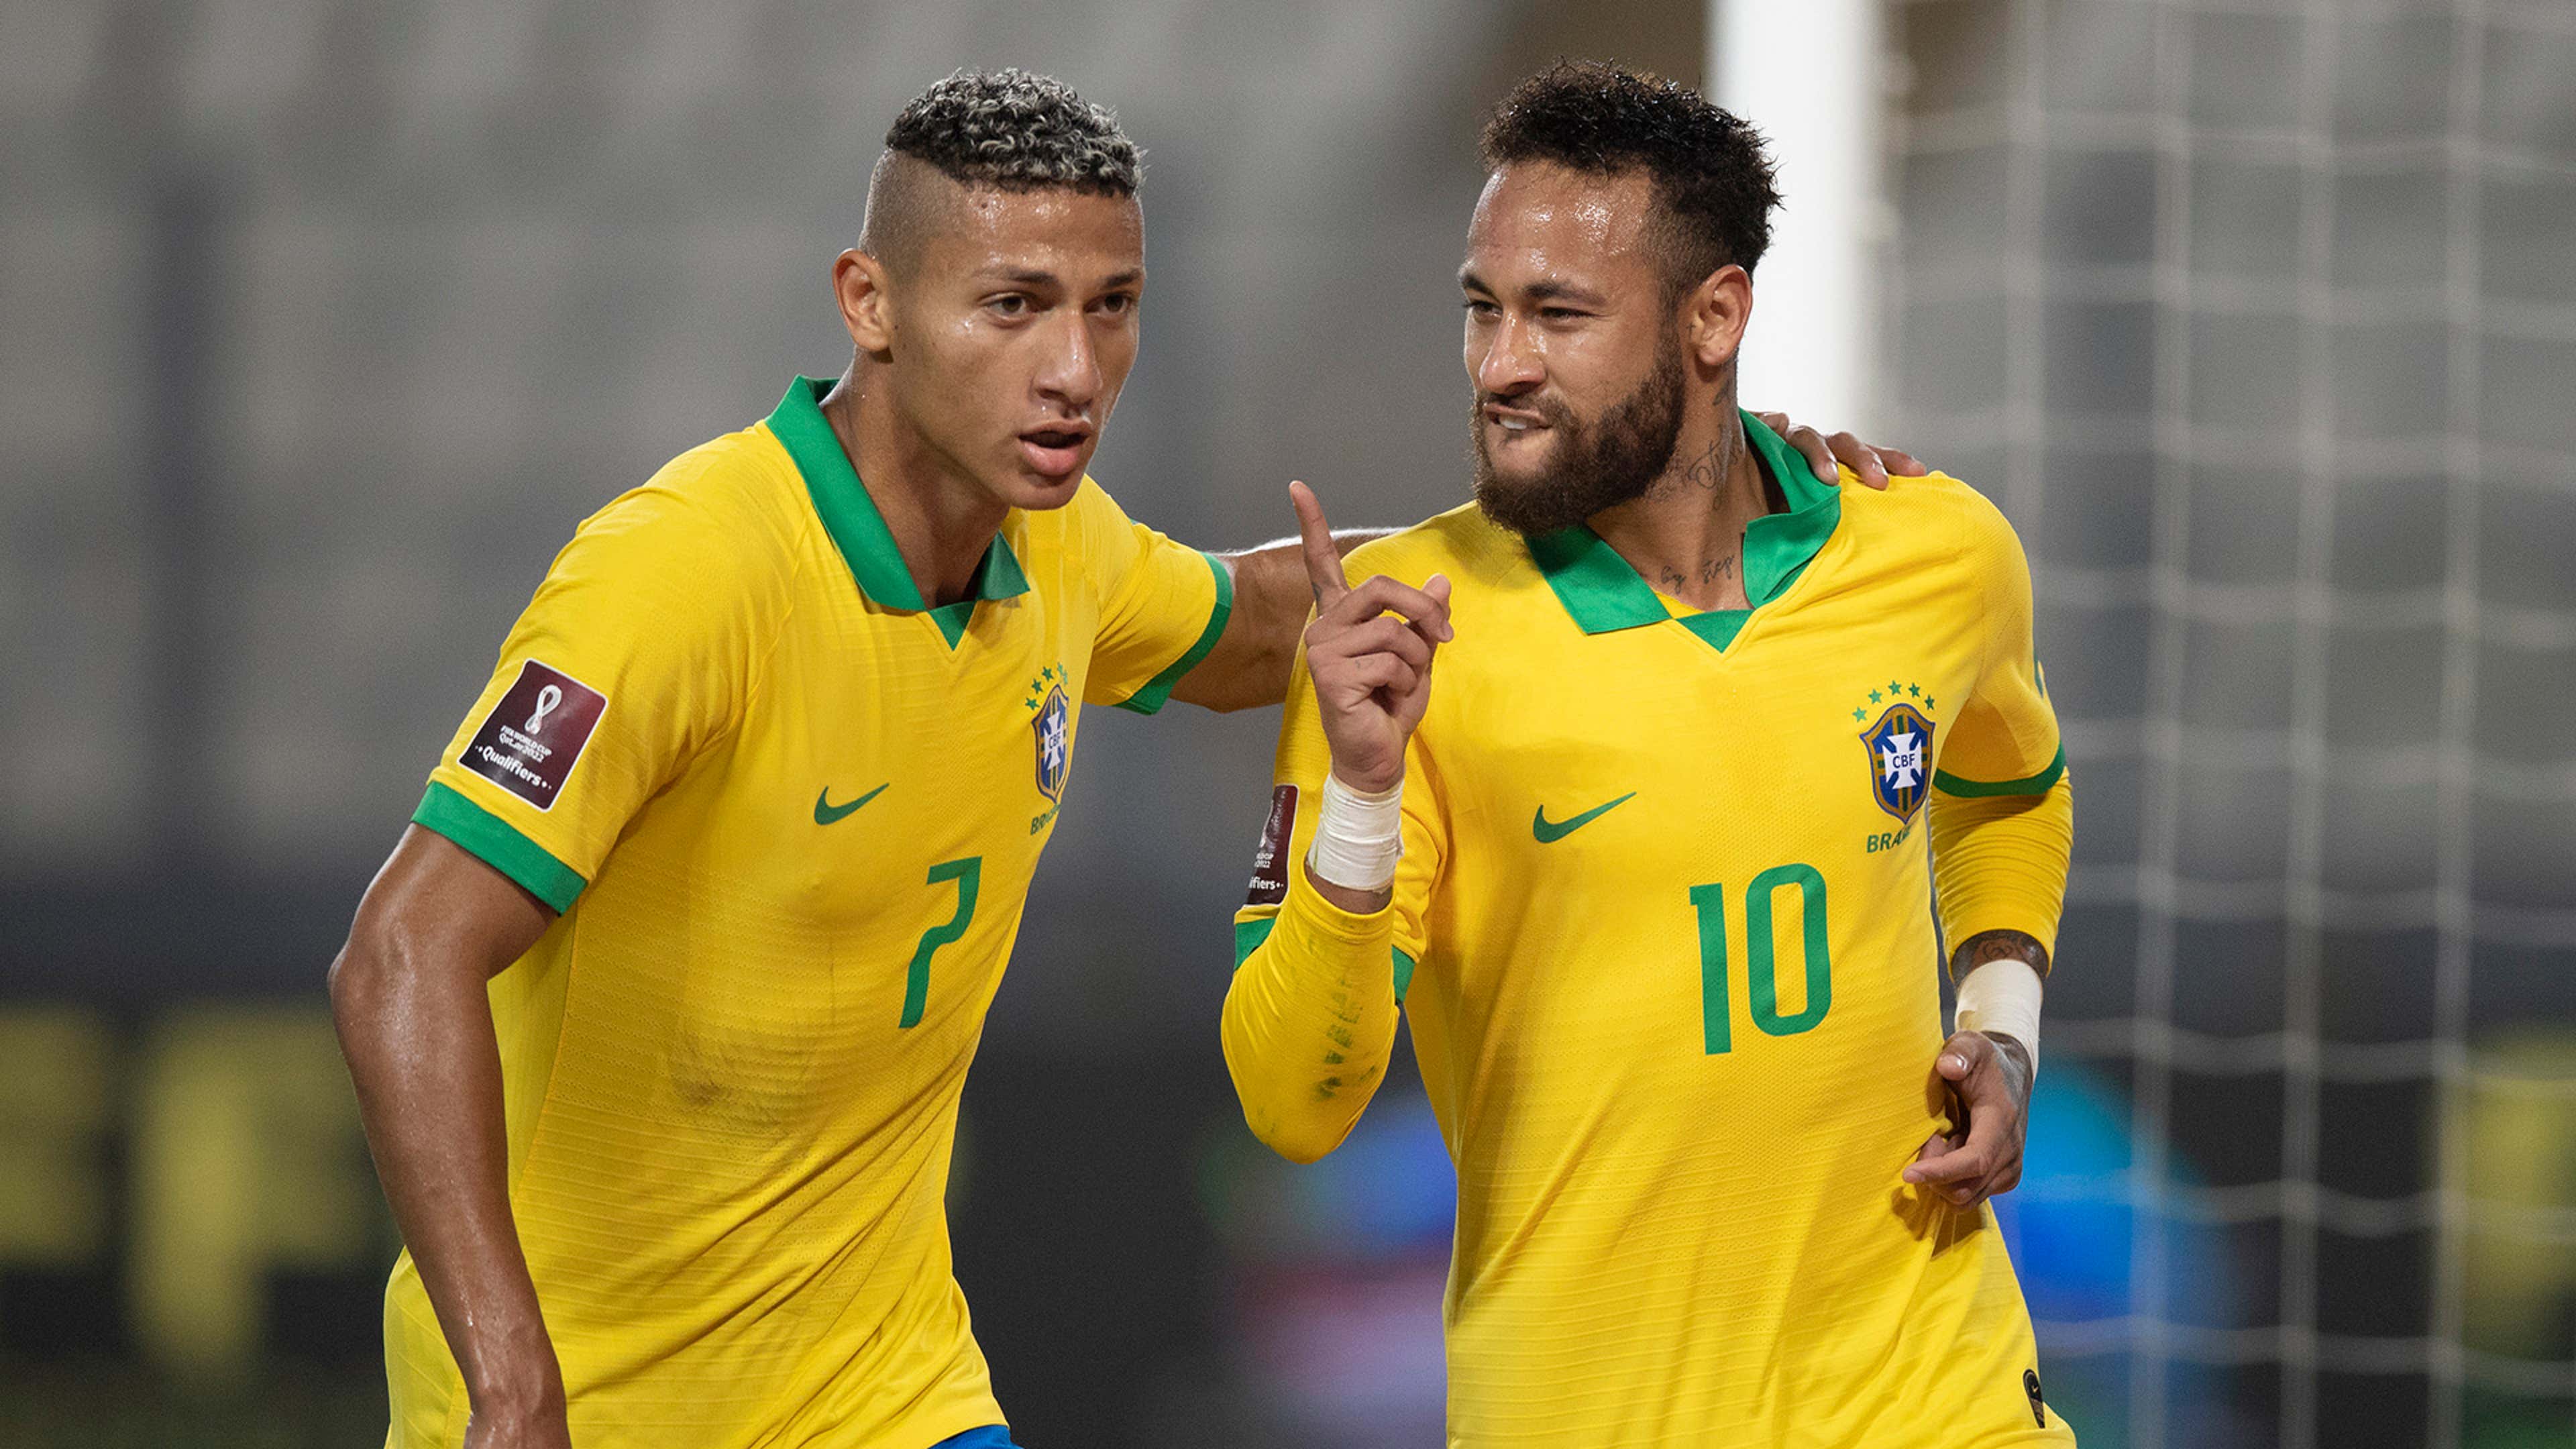 Jogo Especial De Futebol Da Turquia No Brasil: Neymar, Super